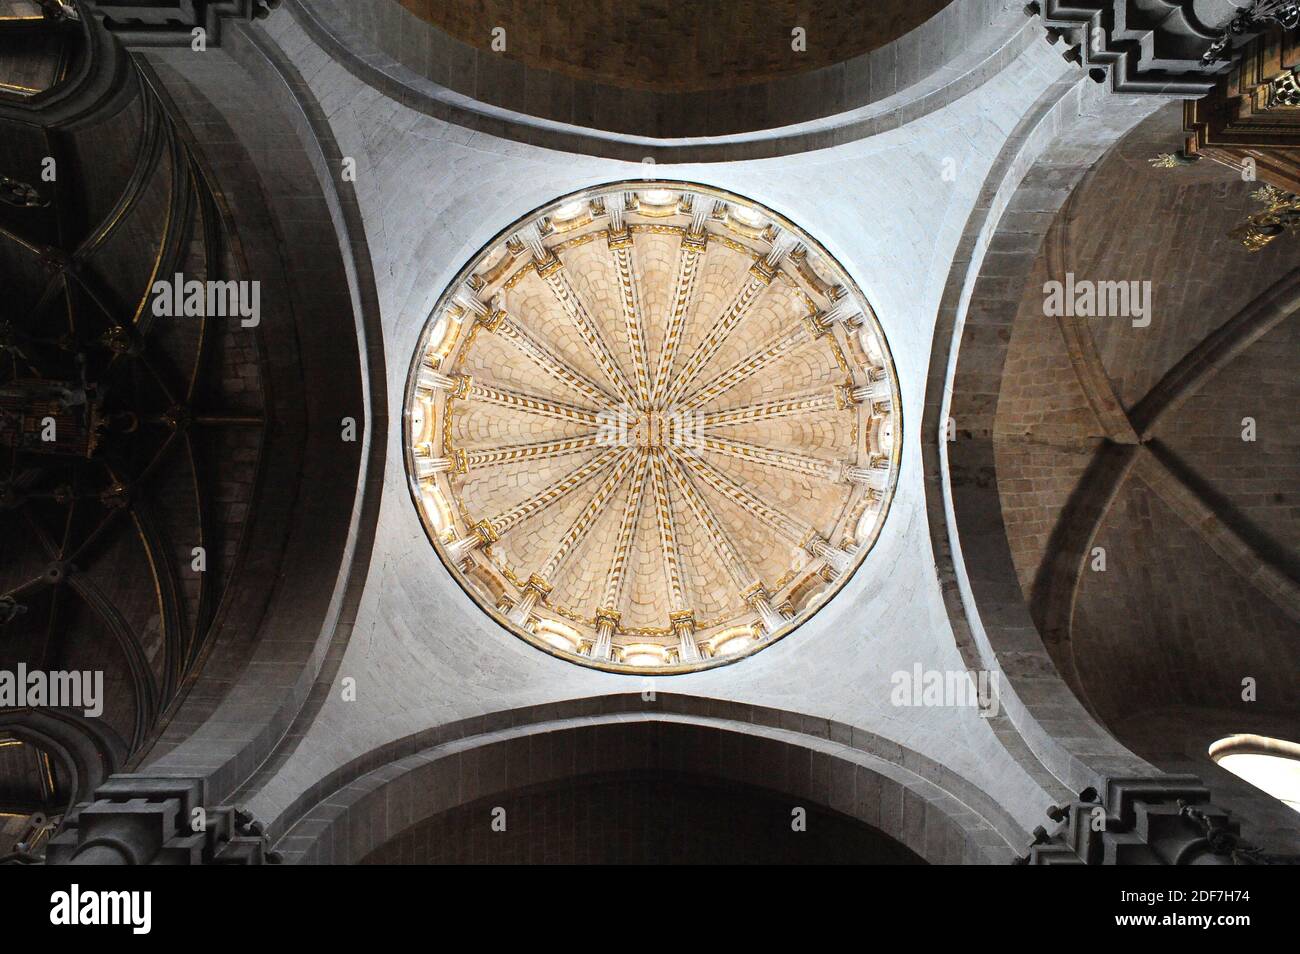 Zamora city, cathedral (romanesque 12th century). Dome. Castilla y Leon, Spain. Stock Photo